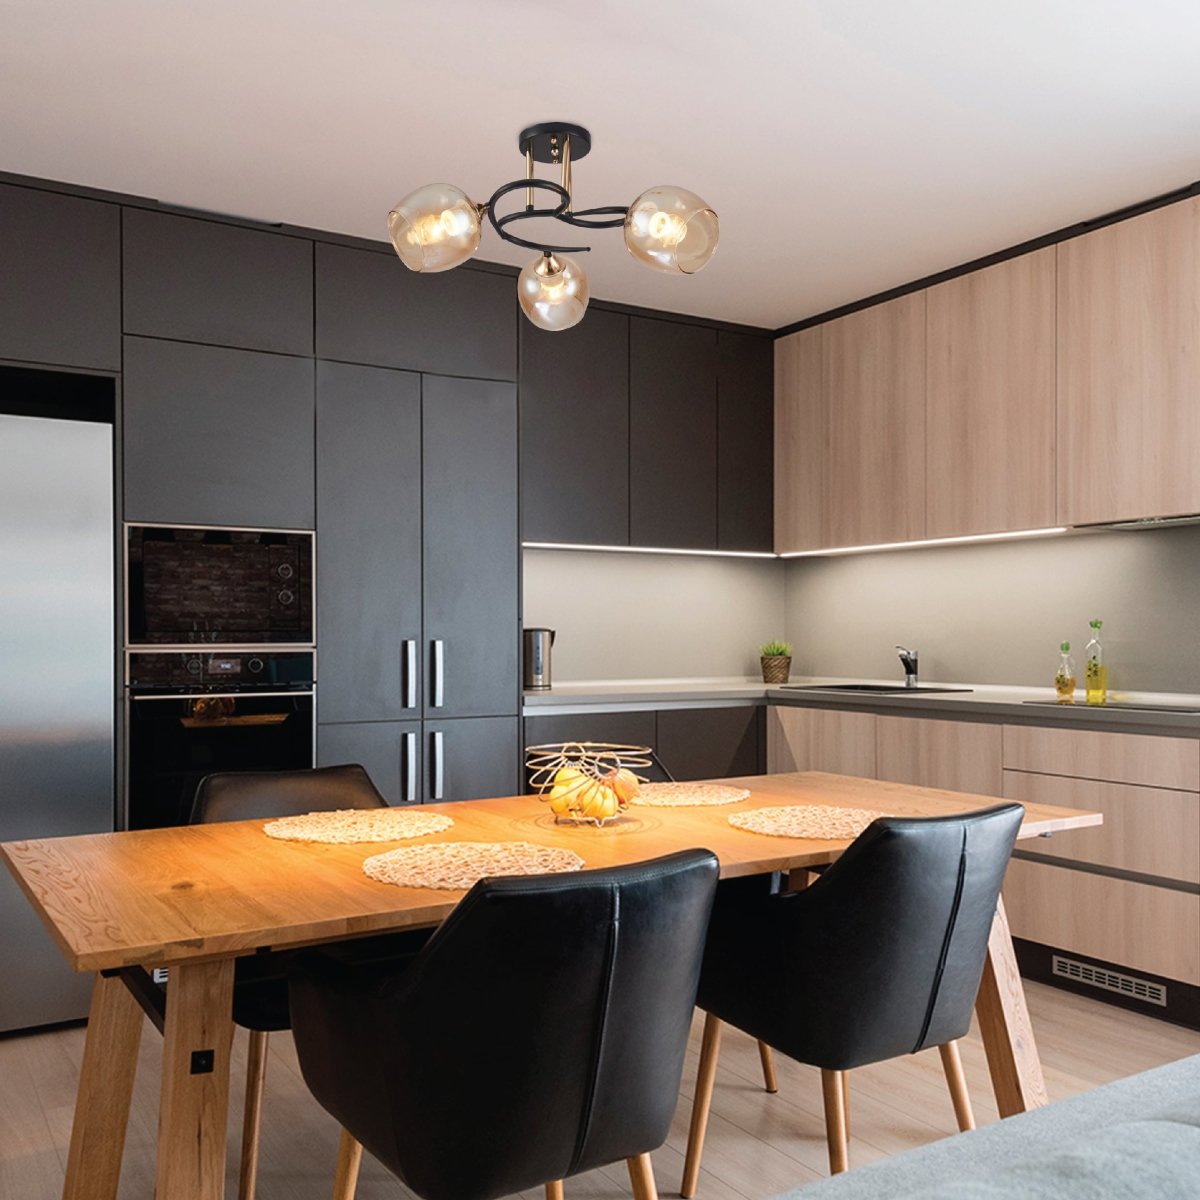 Living room kitchen bedroom use of Amber Bell Glass Black Gold Metal Semi Flush Ceiling Light | TEKLED 159-17130